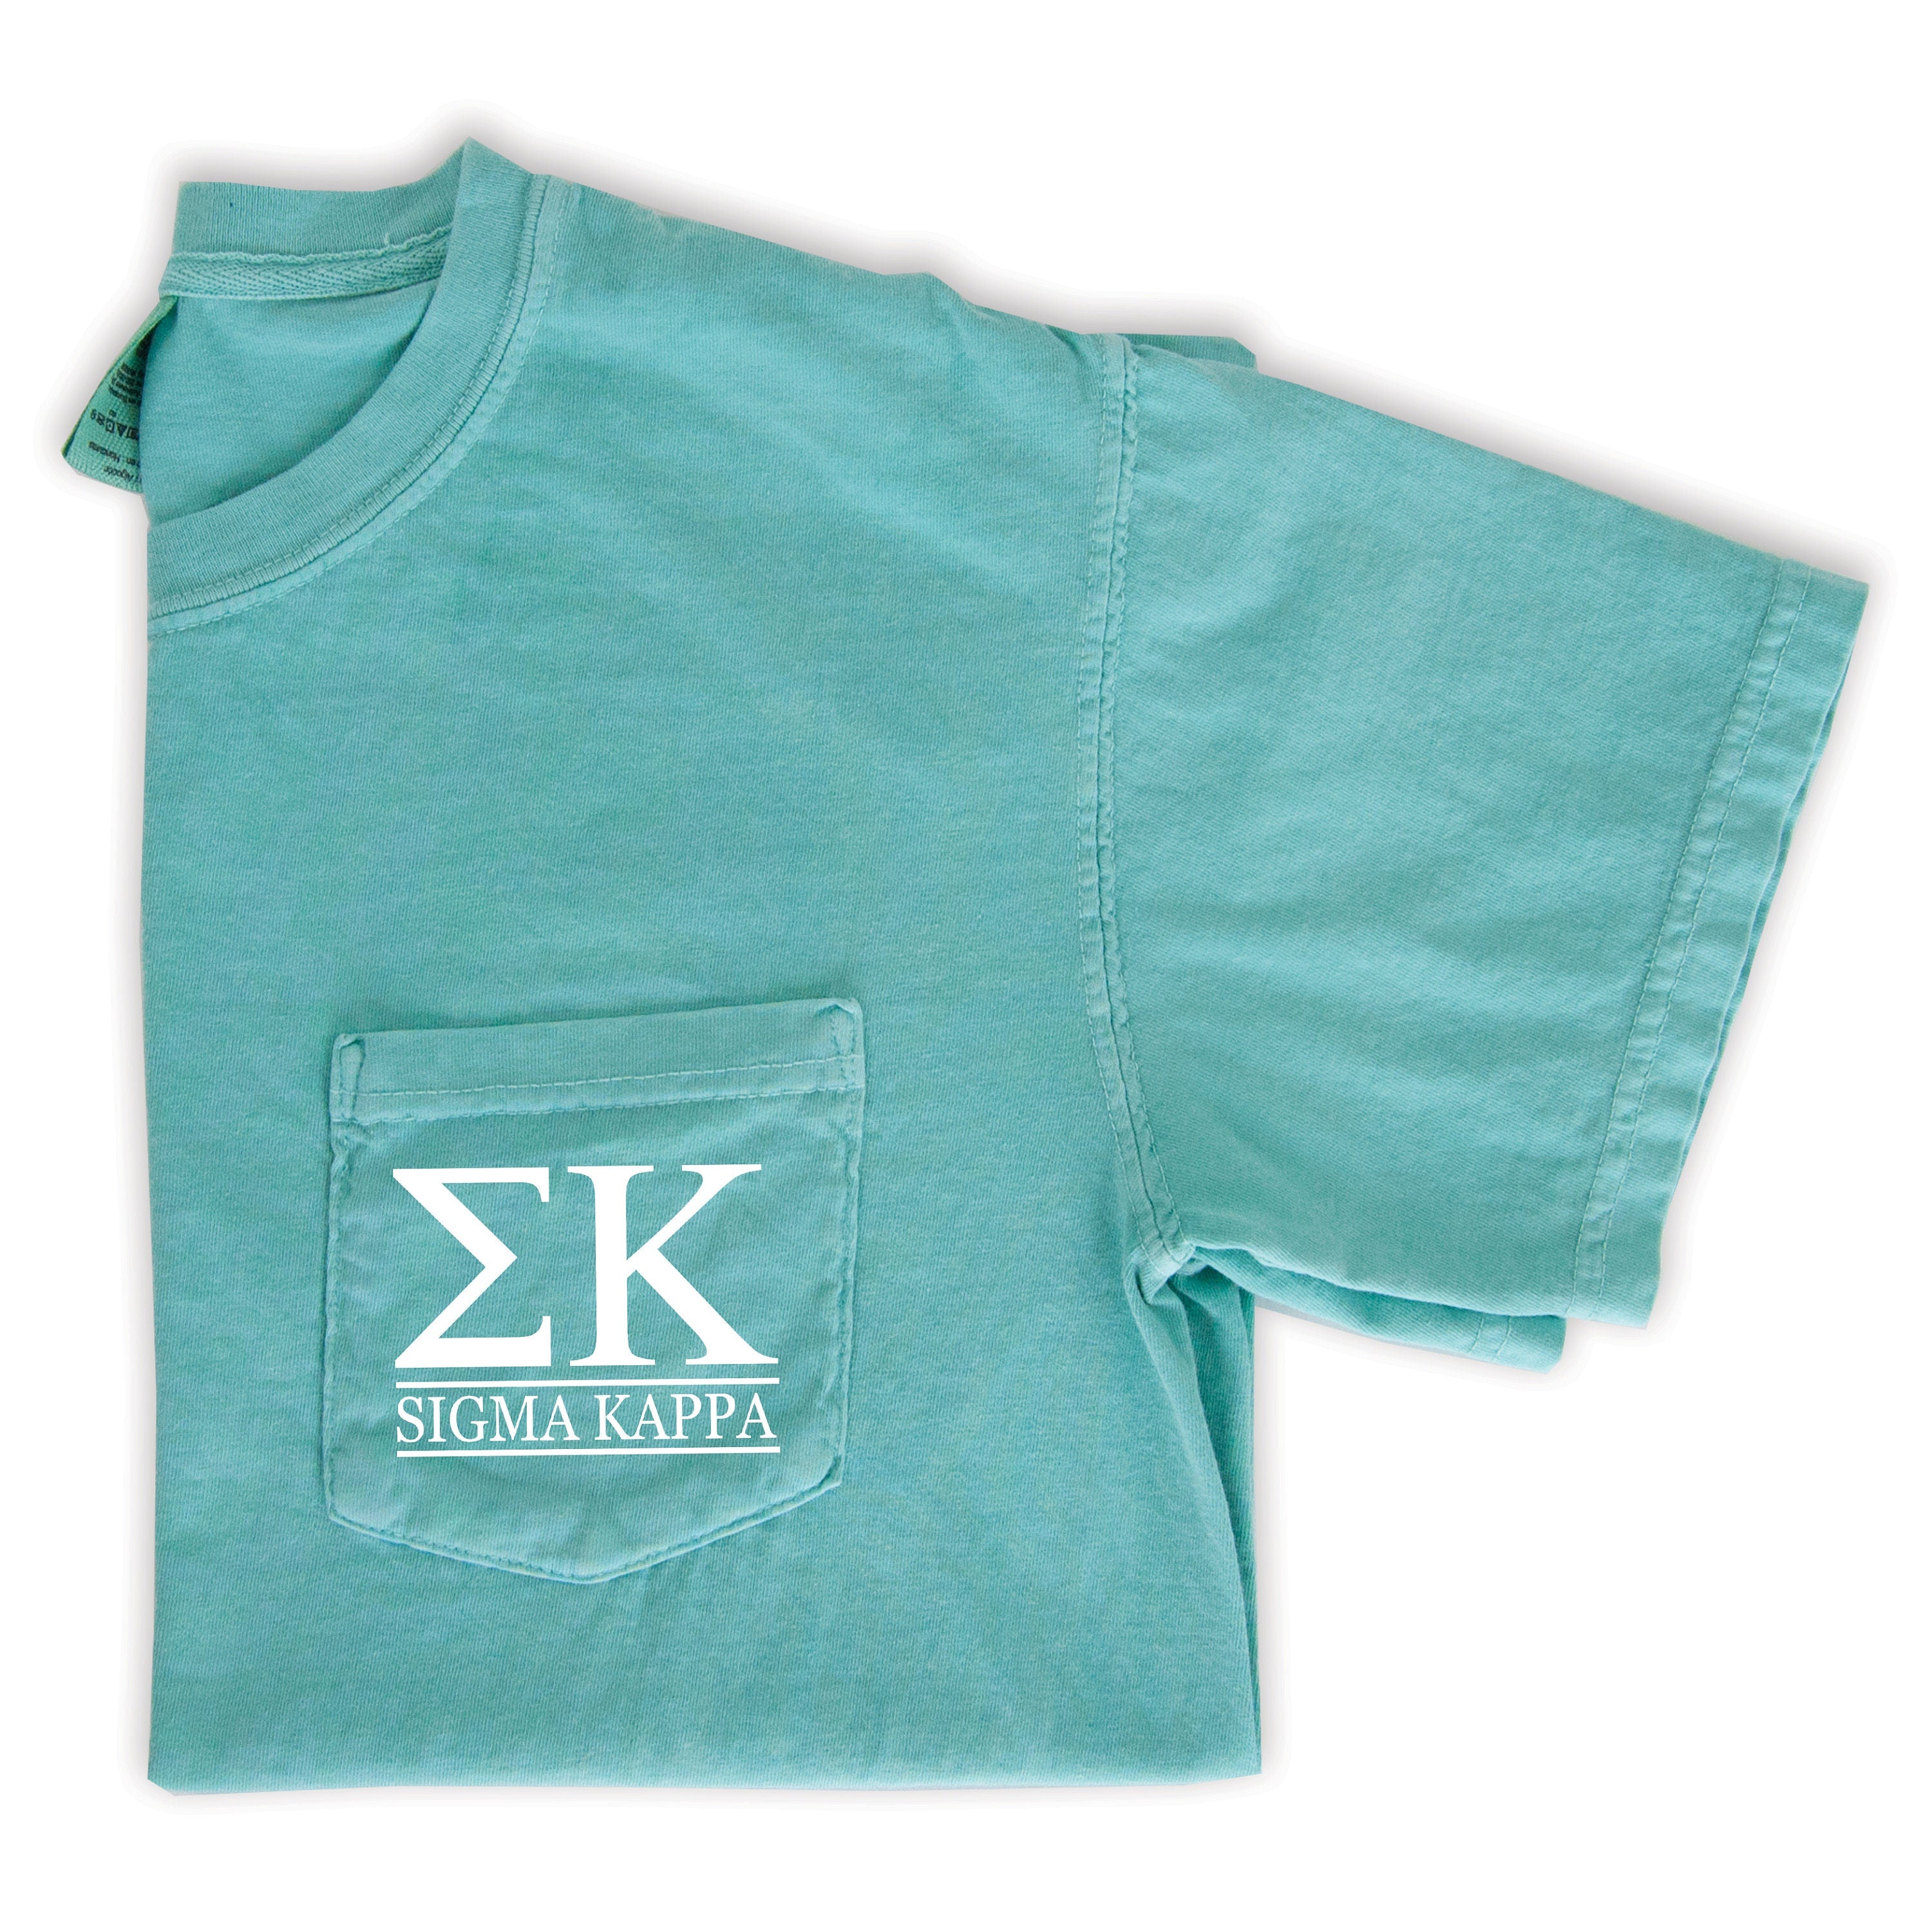 Sigma Kappa Block Letters Pocket T-Shirt - Mint - Go Greek Chic